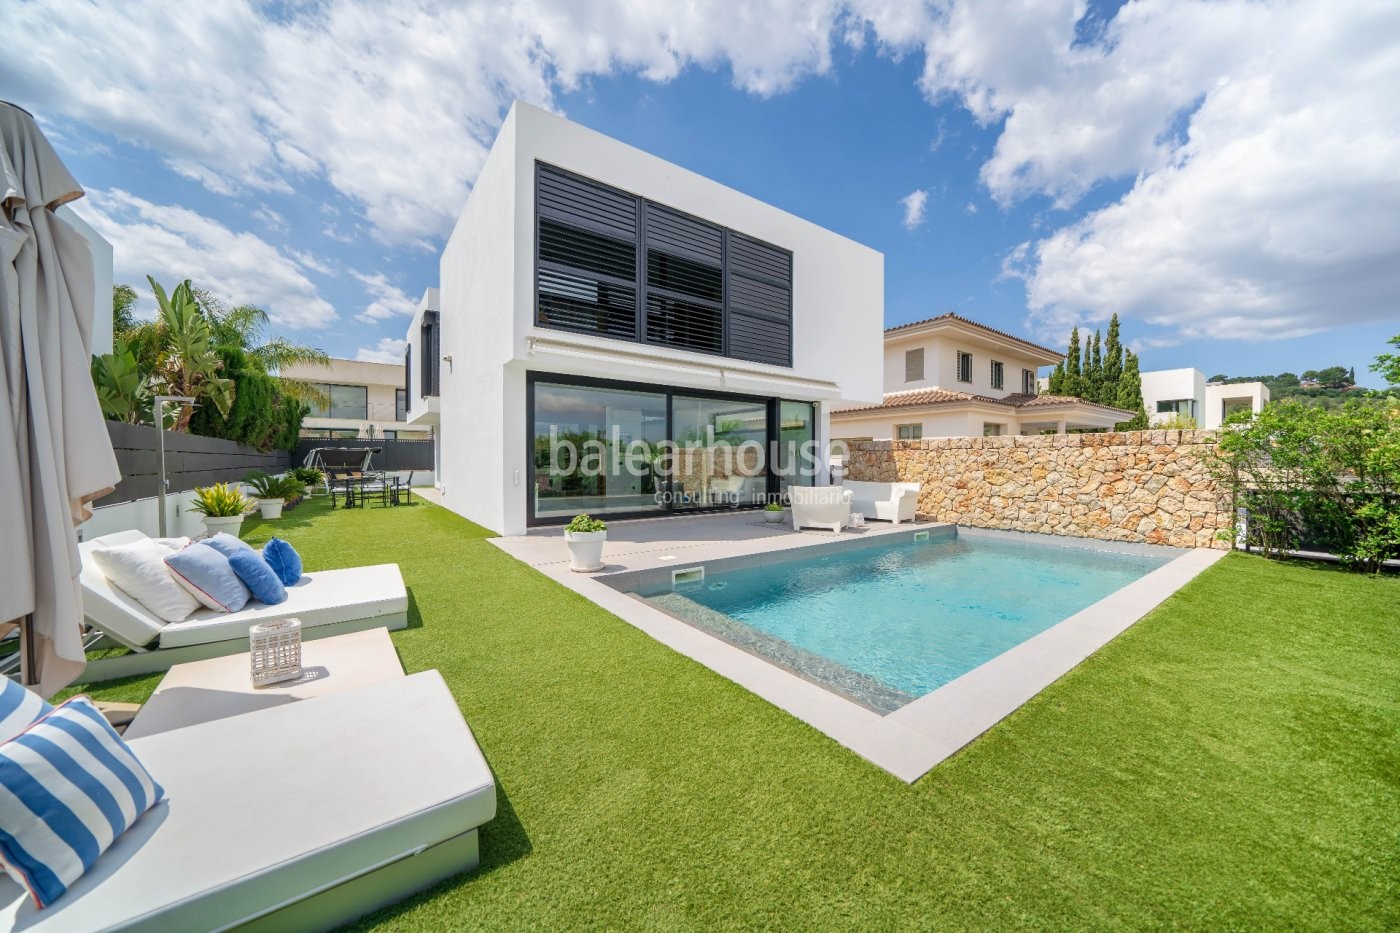 Moderne Villa mit Garten und Schwimmbad in einer grünen Gegend von Palma gelegen.